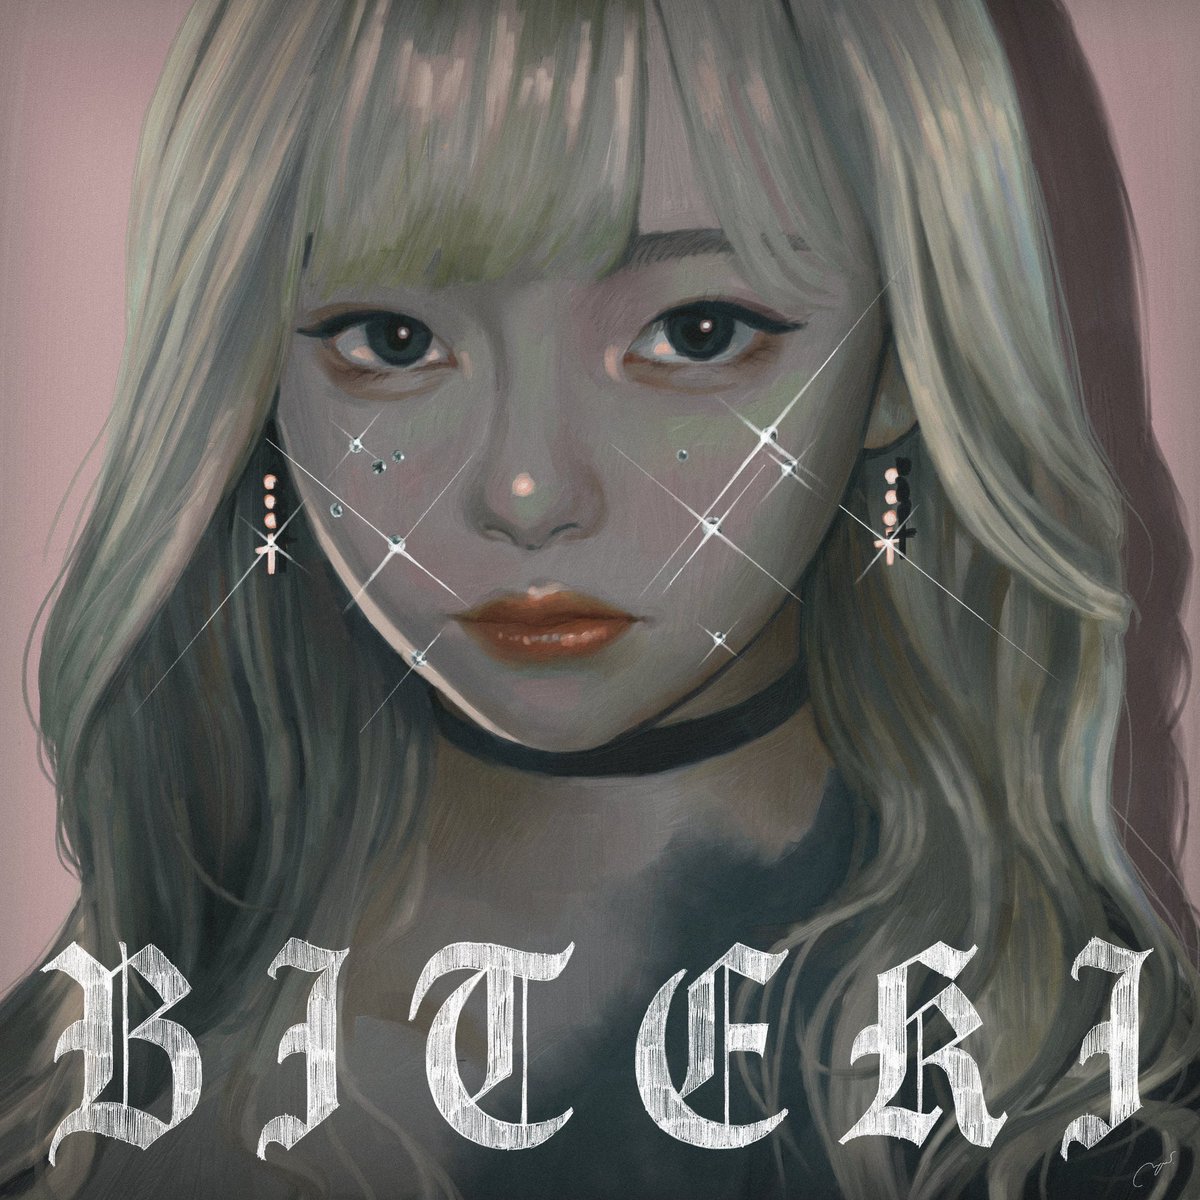 Cover art for『Biteki Keikaku - Aoi Risoukyou feat. Harutya』from the release『BITEKI』